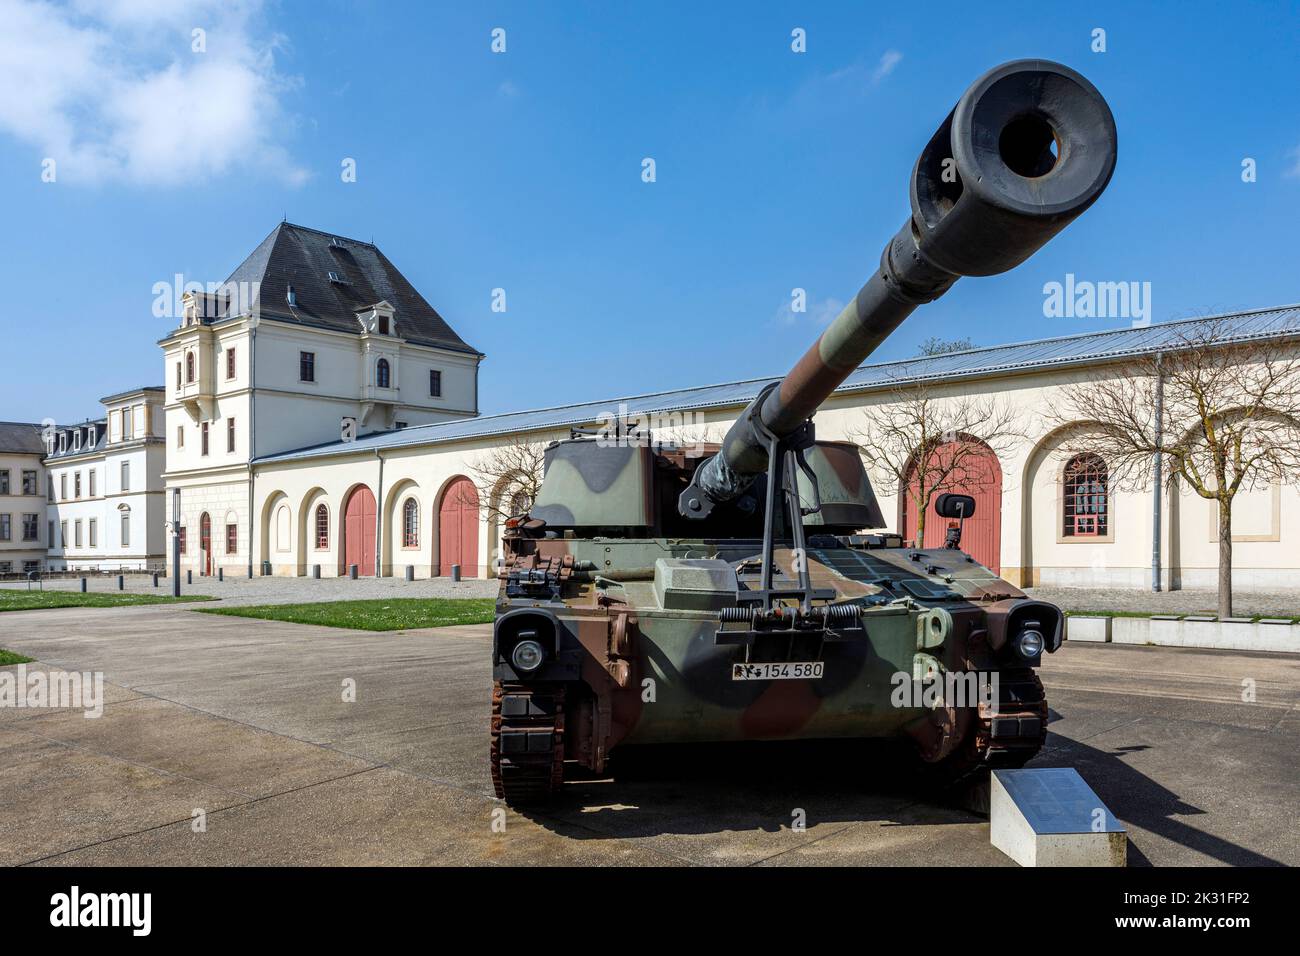 Militärhistorisches Museum der Bundeswehr in Dresden, Panzerhaubitze M109 auf dem Außengelände neben dem Hauptarsenal Stock Photo